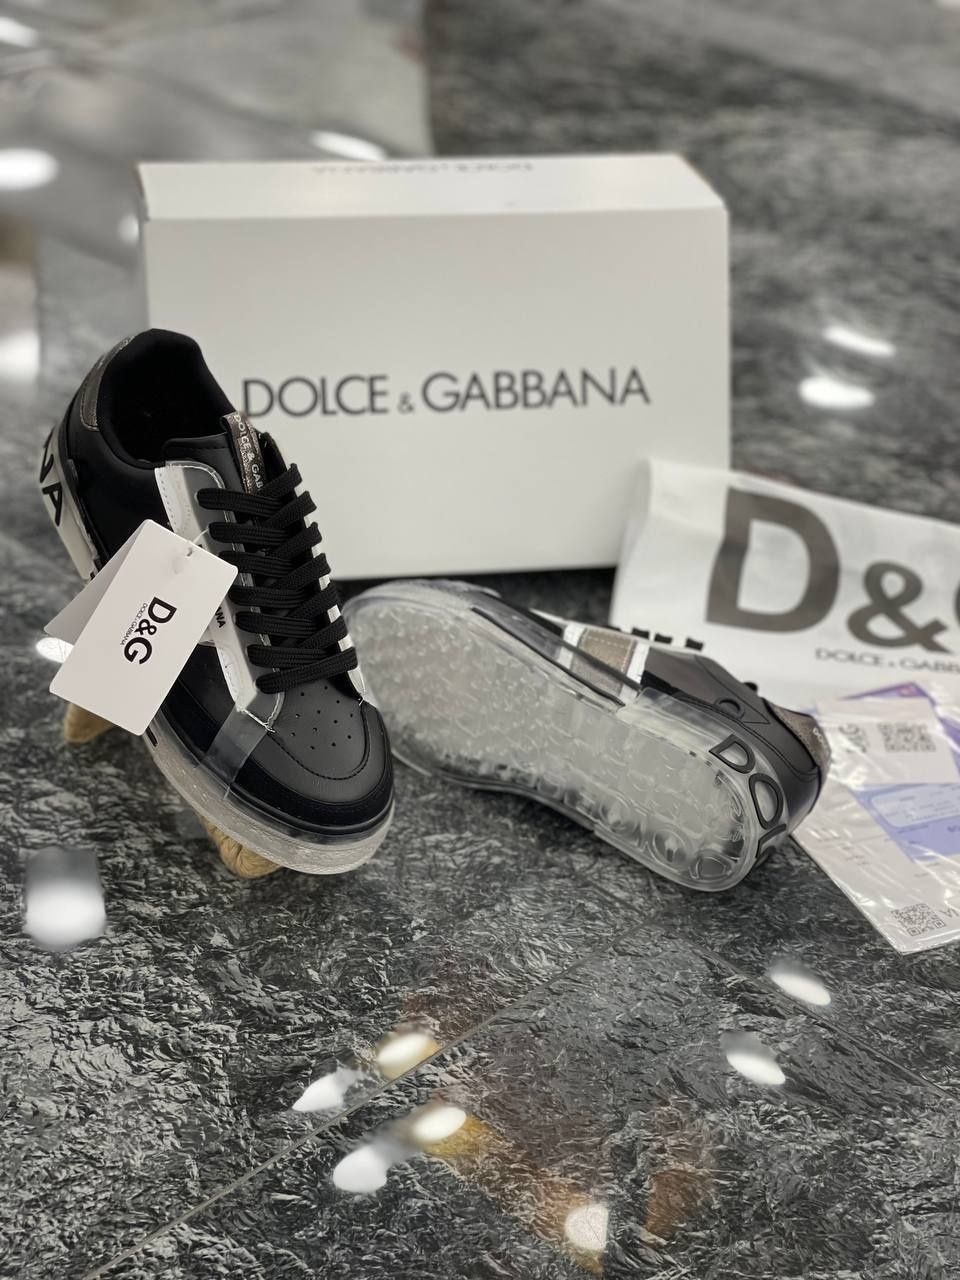 Dolce Gabbana talpa silicon